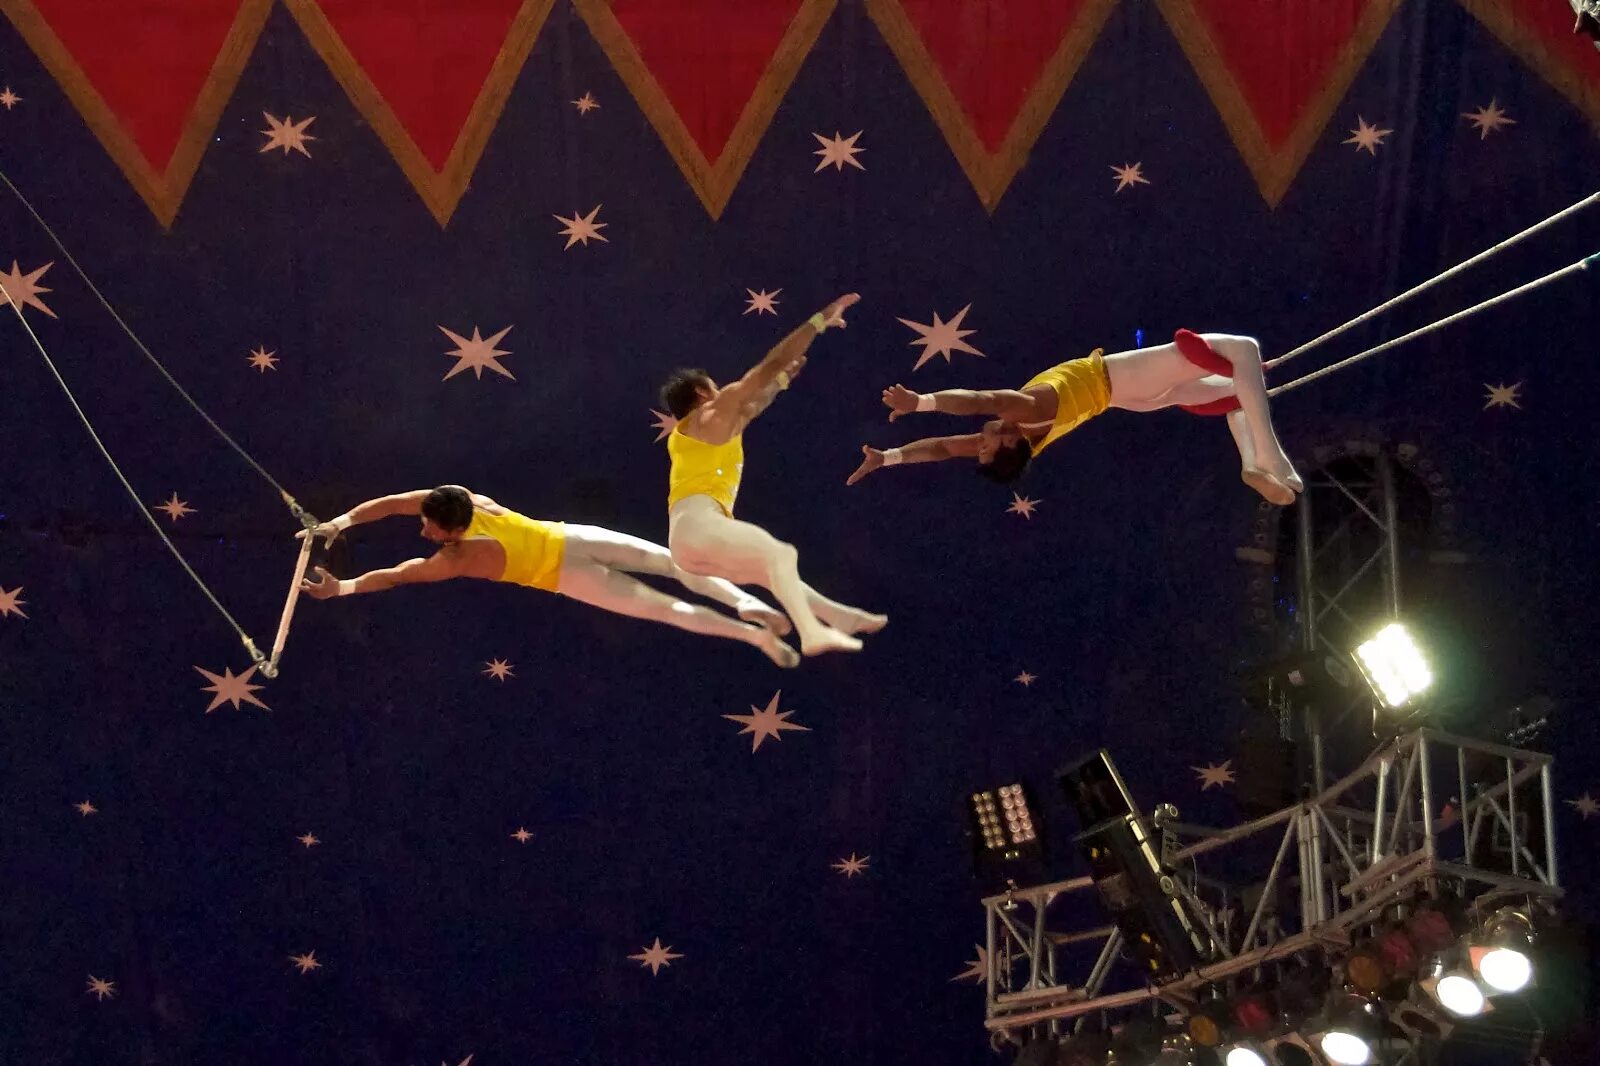 Цирк Trapeze artists. Цирк дю солей воздушные гимнасты. Гимнасты в цирке. Акробаты в цирке.